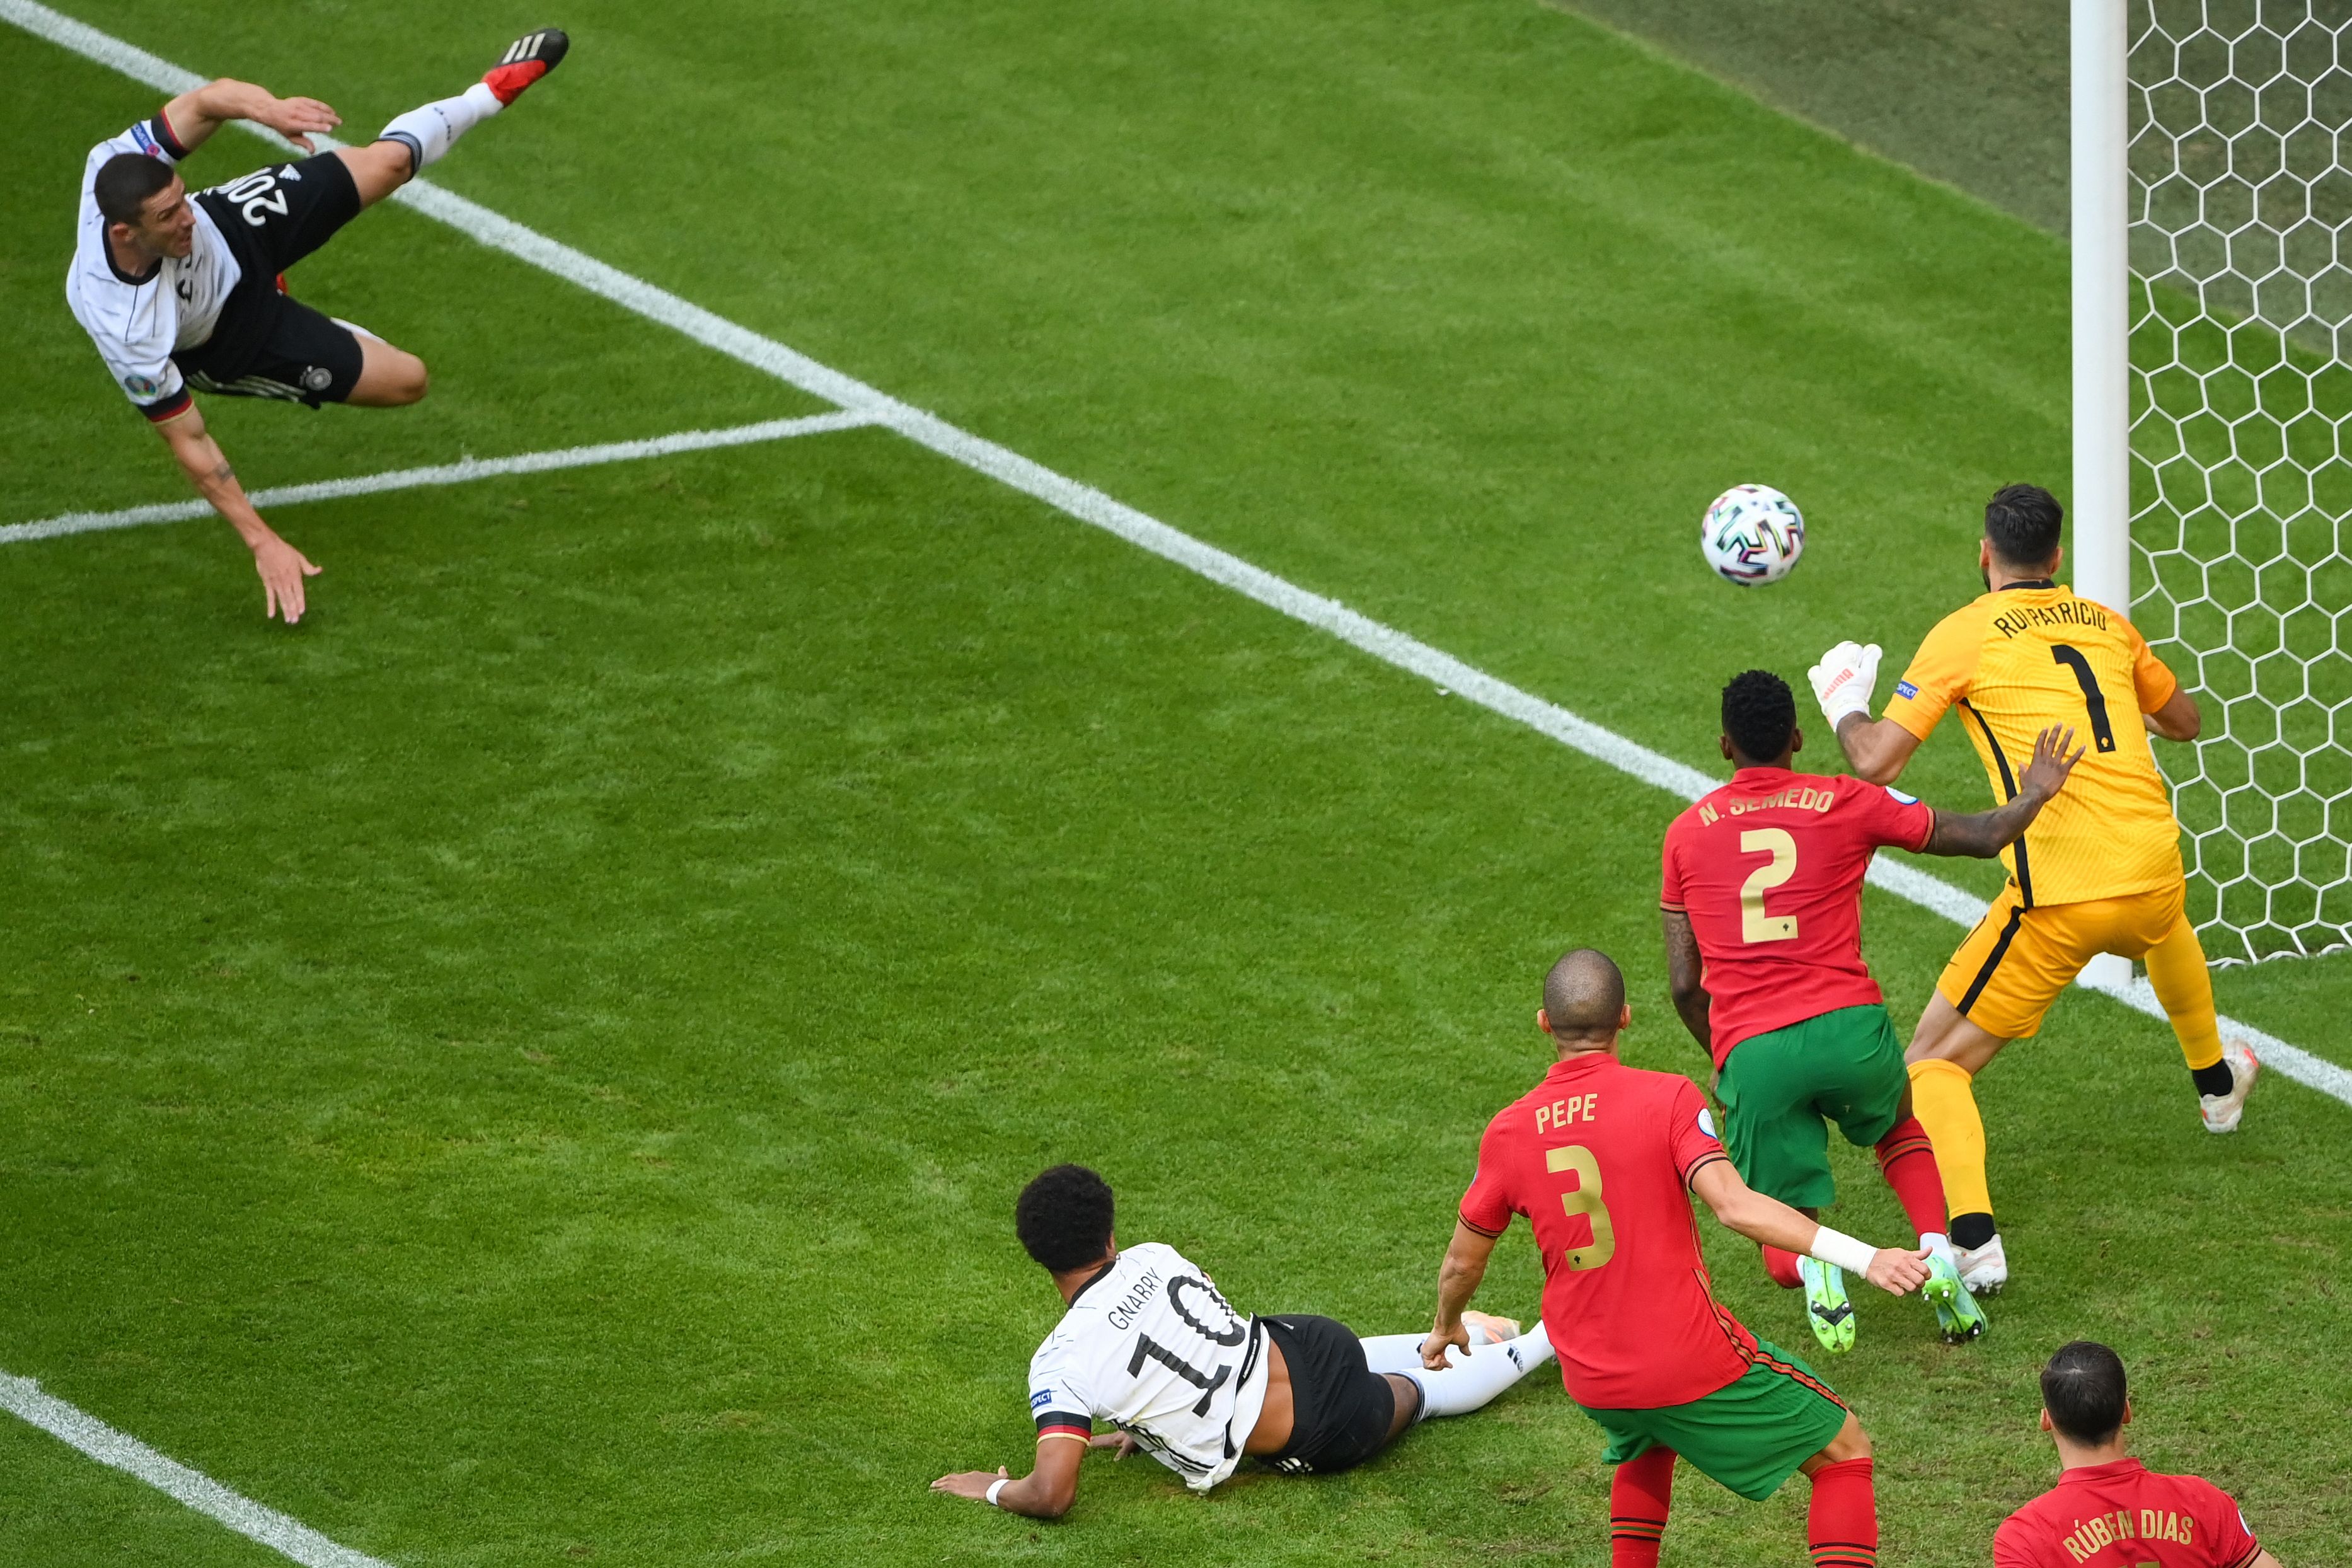 德国左卫戈森斯（左）打爆葡军右路！虽然第5分钟打进一个漂亮进球越位不算（图），但他随后一次传球制造乌龙球，还在下半场传射建功。（法新社照片）

